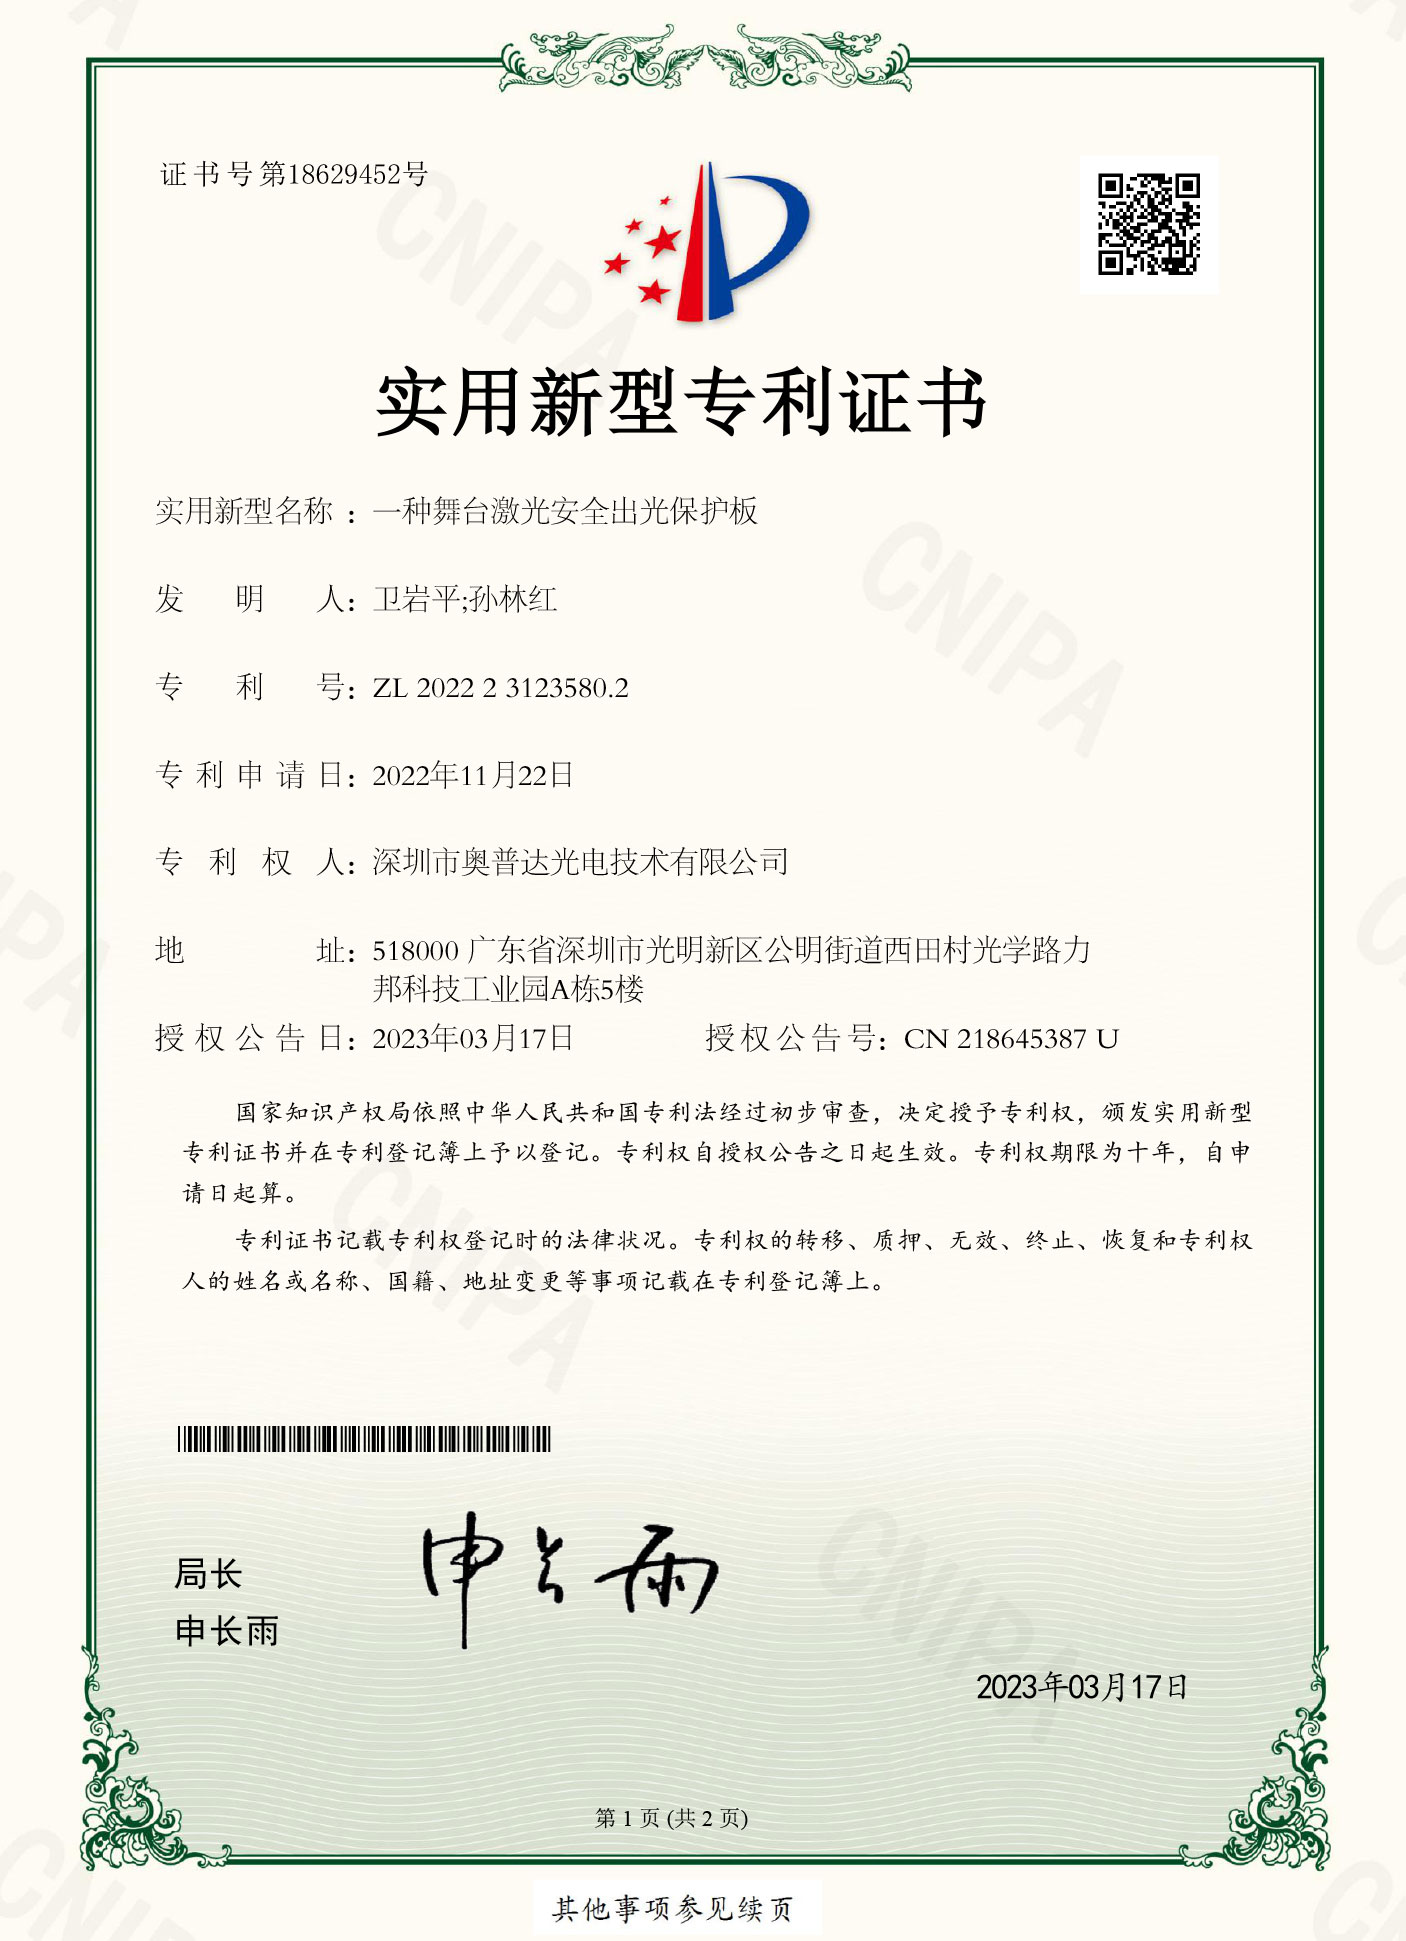 深圳市奥普达光电技术有限公司-2022231235802-实用新型专利证书(签章)